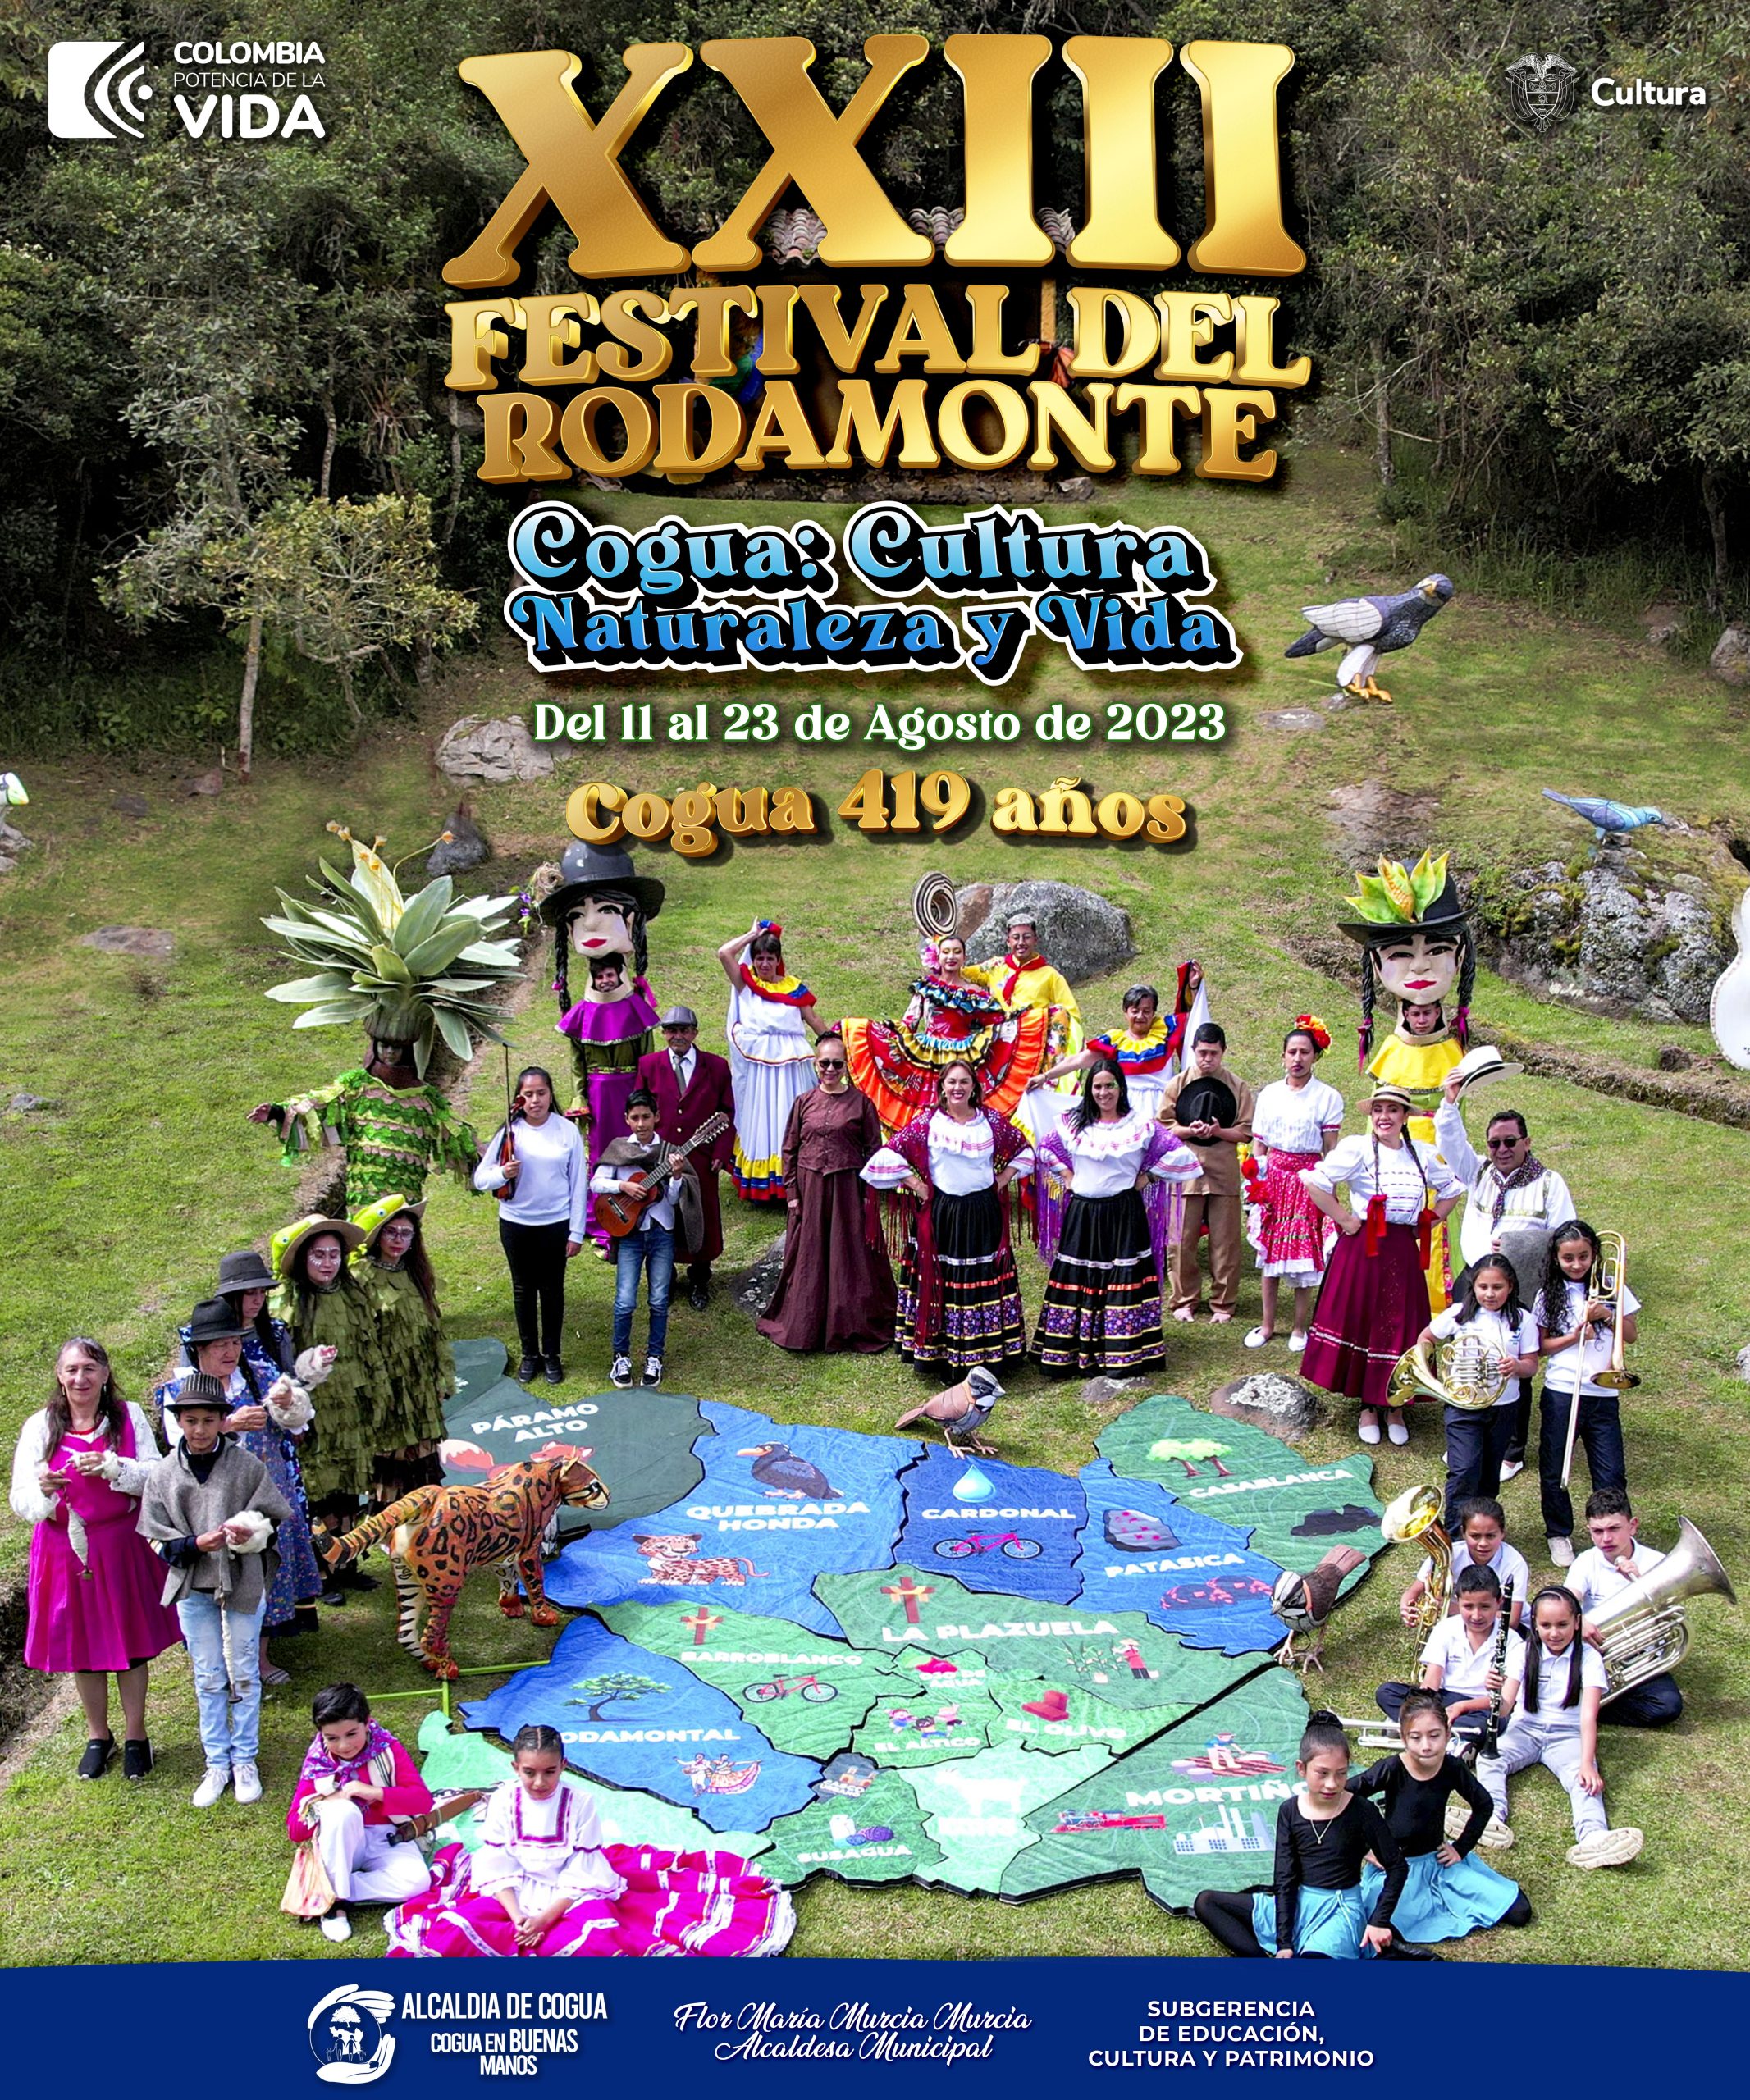 DEL 11 AL 23 DE AGOSTO, XXIII FESTIVAL DEL RODAMONTE 2023 EN COGUA, CUNDINAMARCA.